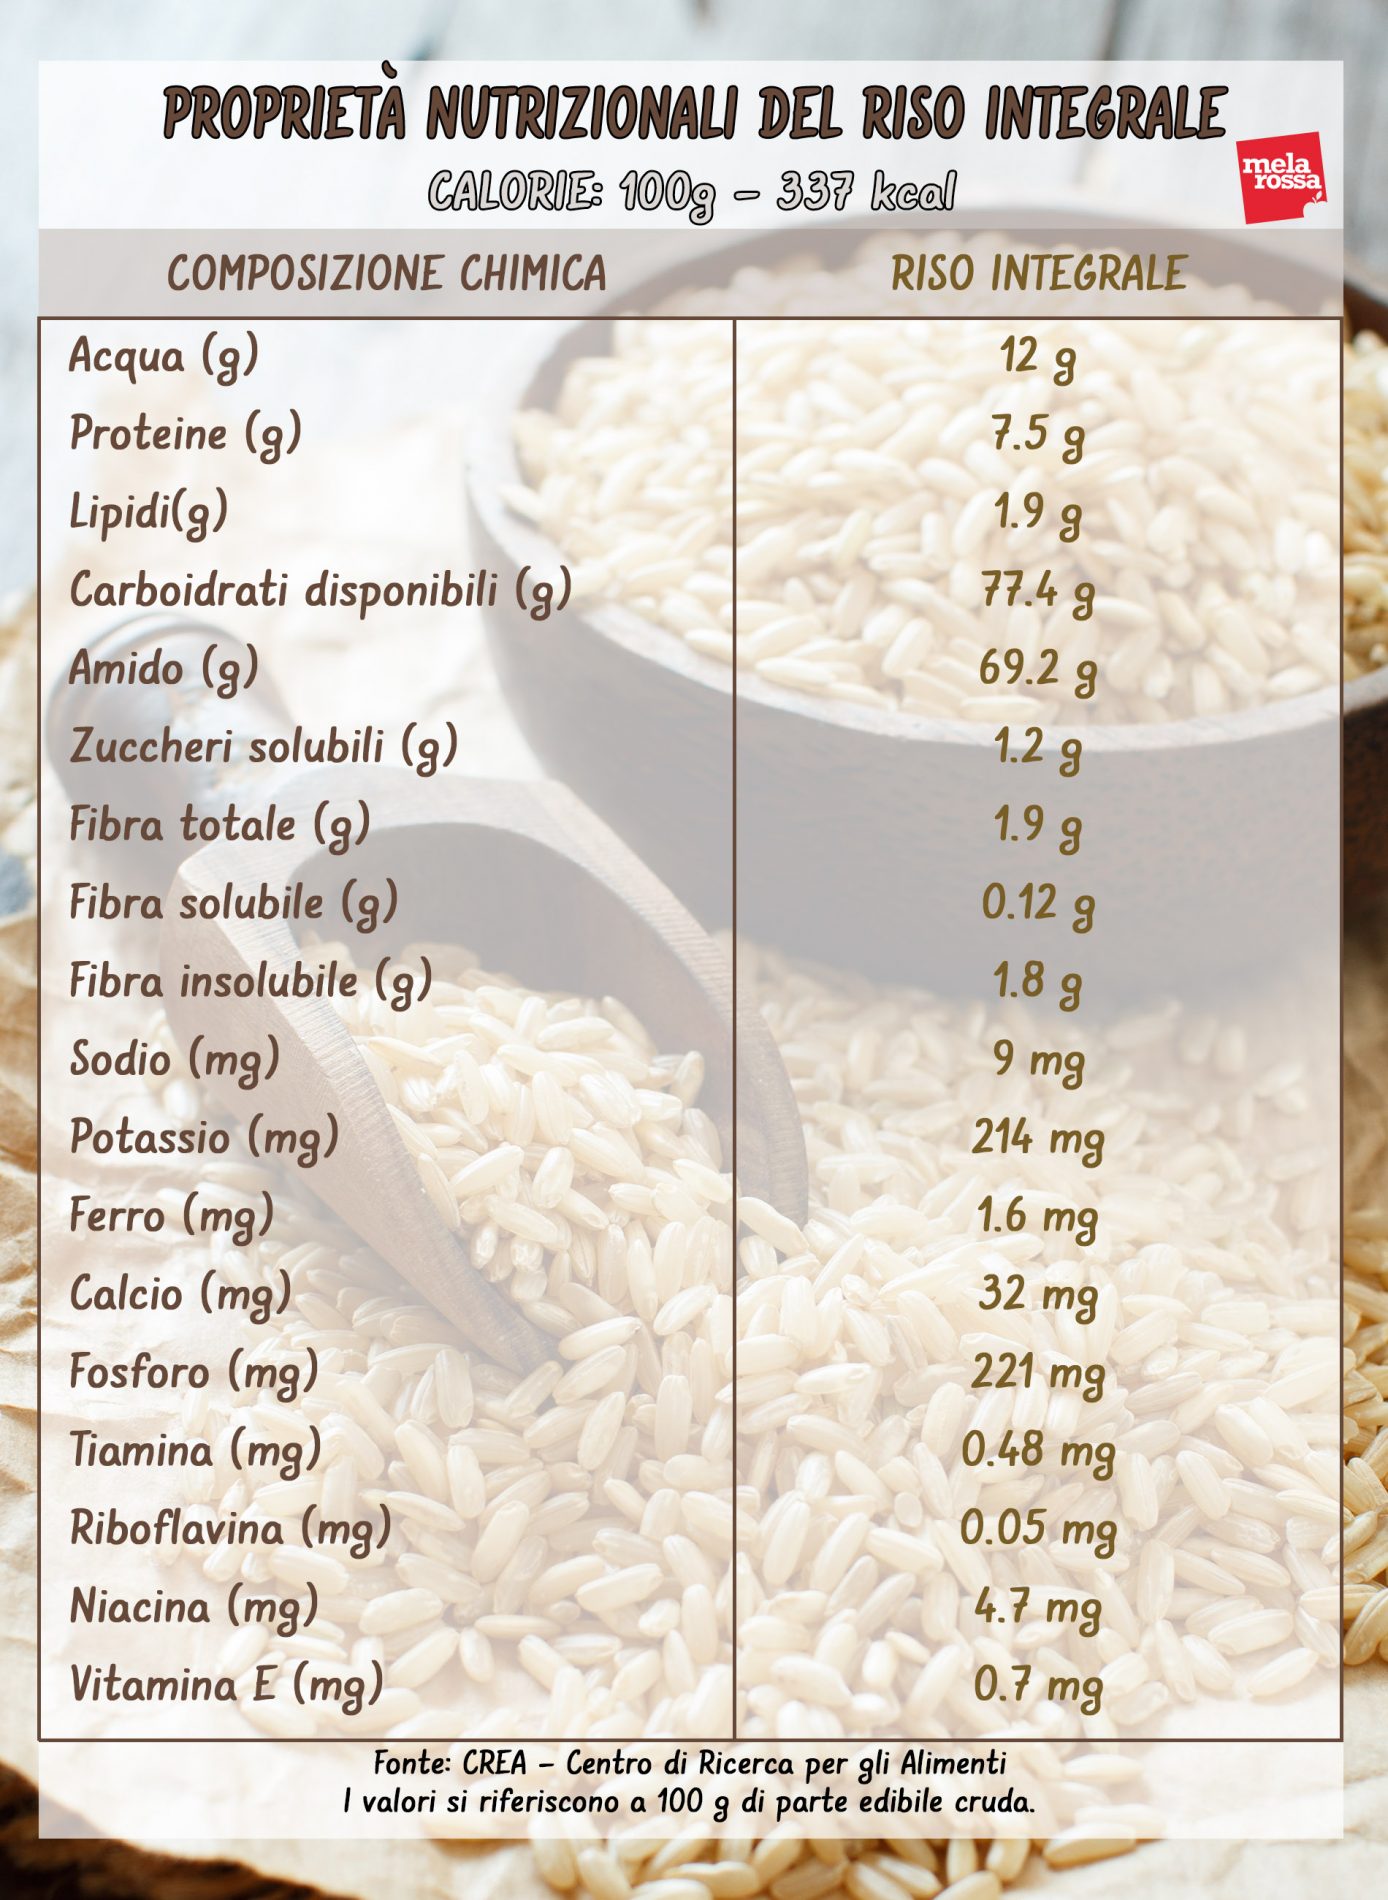 riso integrale: valori nutrizionali 